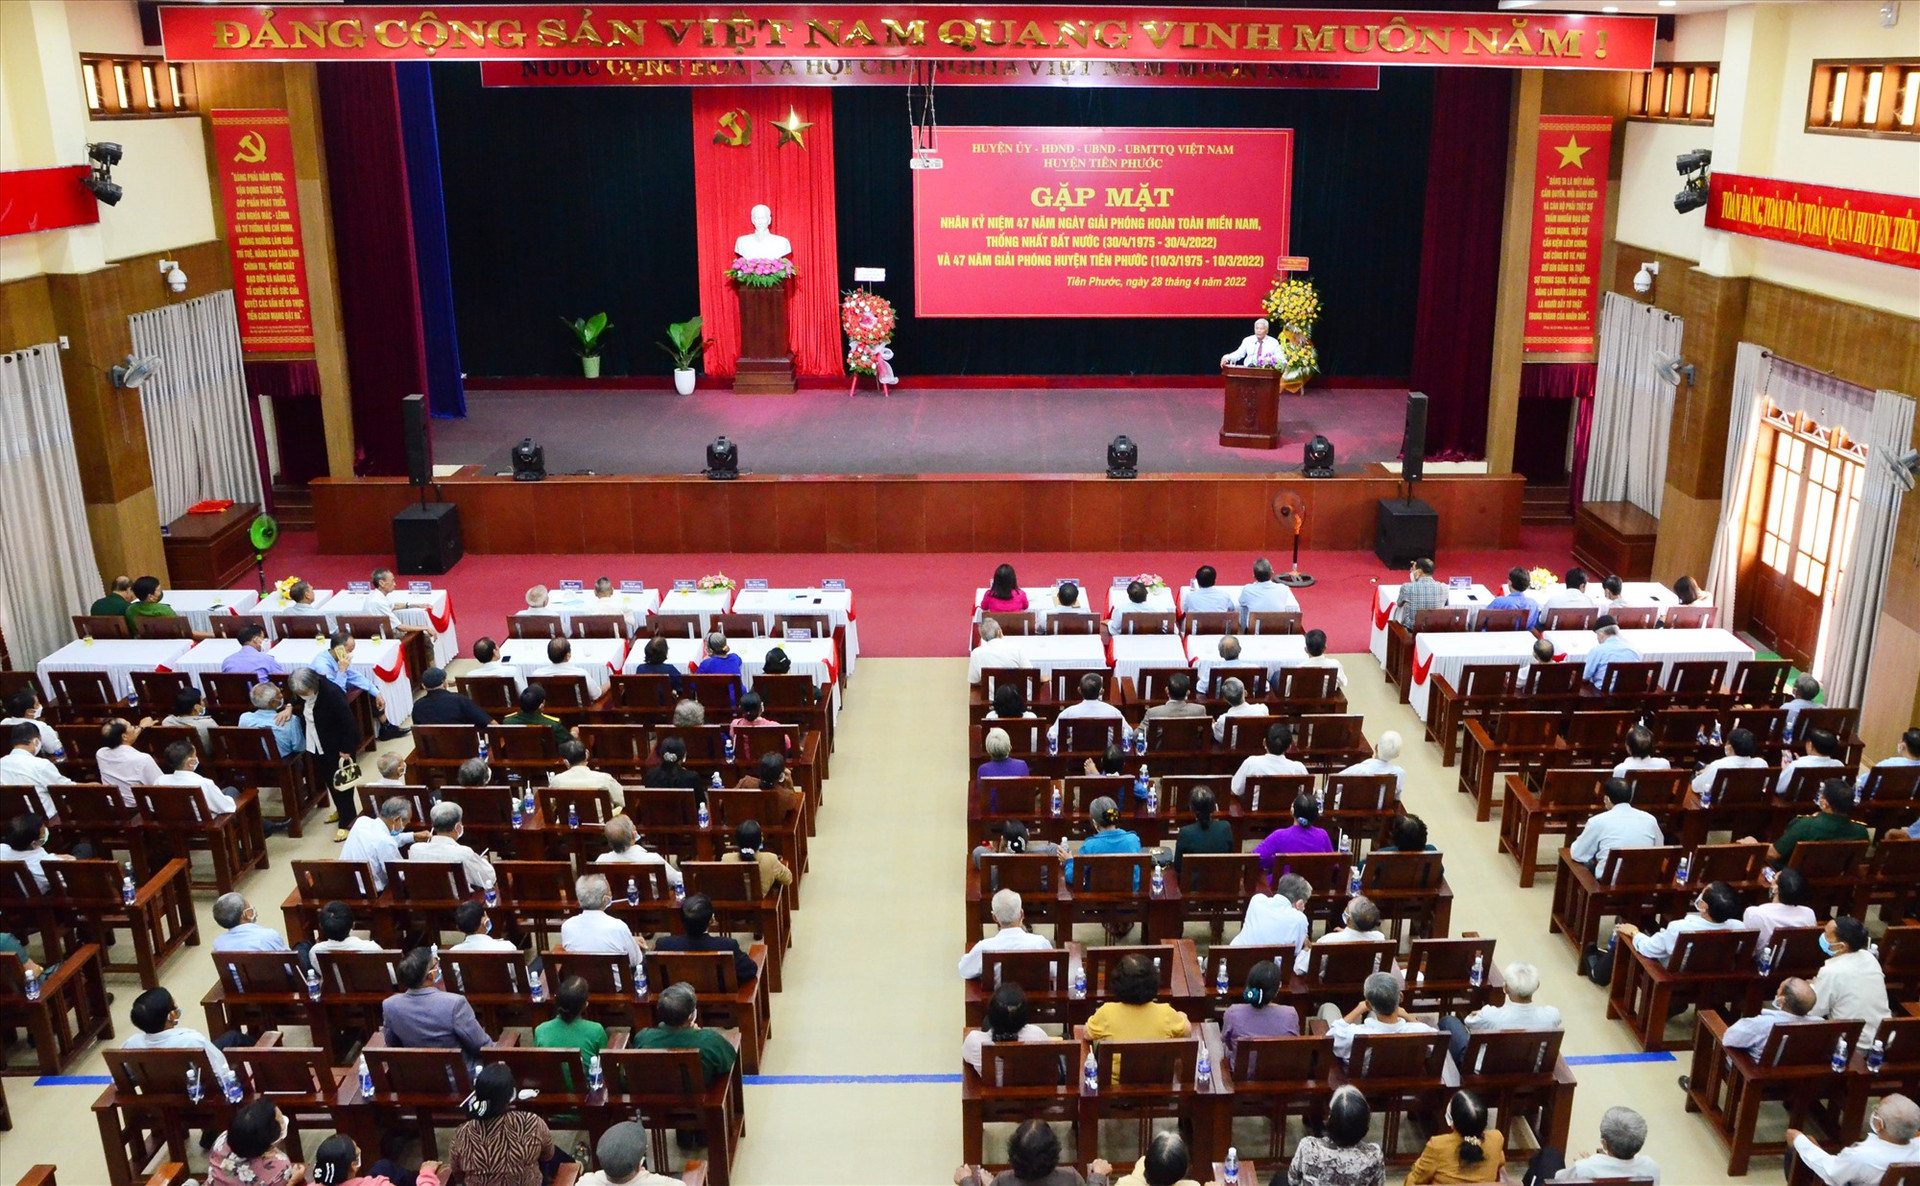 Huyện Tiên Phước tổ chức gặp mặt cán bộ lão thành cách mạng, cán bộ, lãnh đạo huyện qua các thời kỳ nhân dịp kỷ niệm 47 năm giải phóng miền Nam thống nhất đất nước (30.4.1975 - 30.4.2022). Ảnh: N.HƯNG